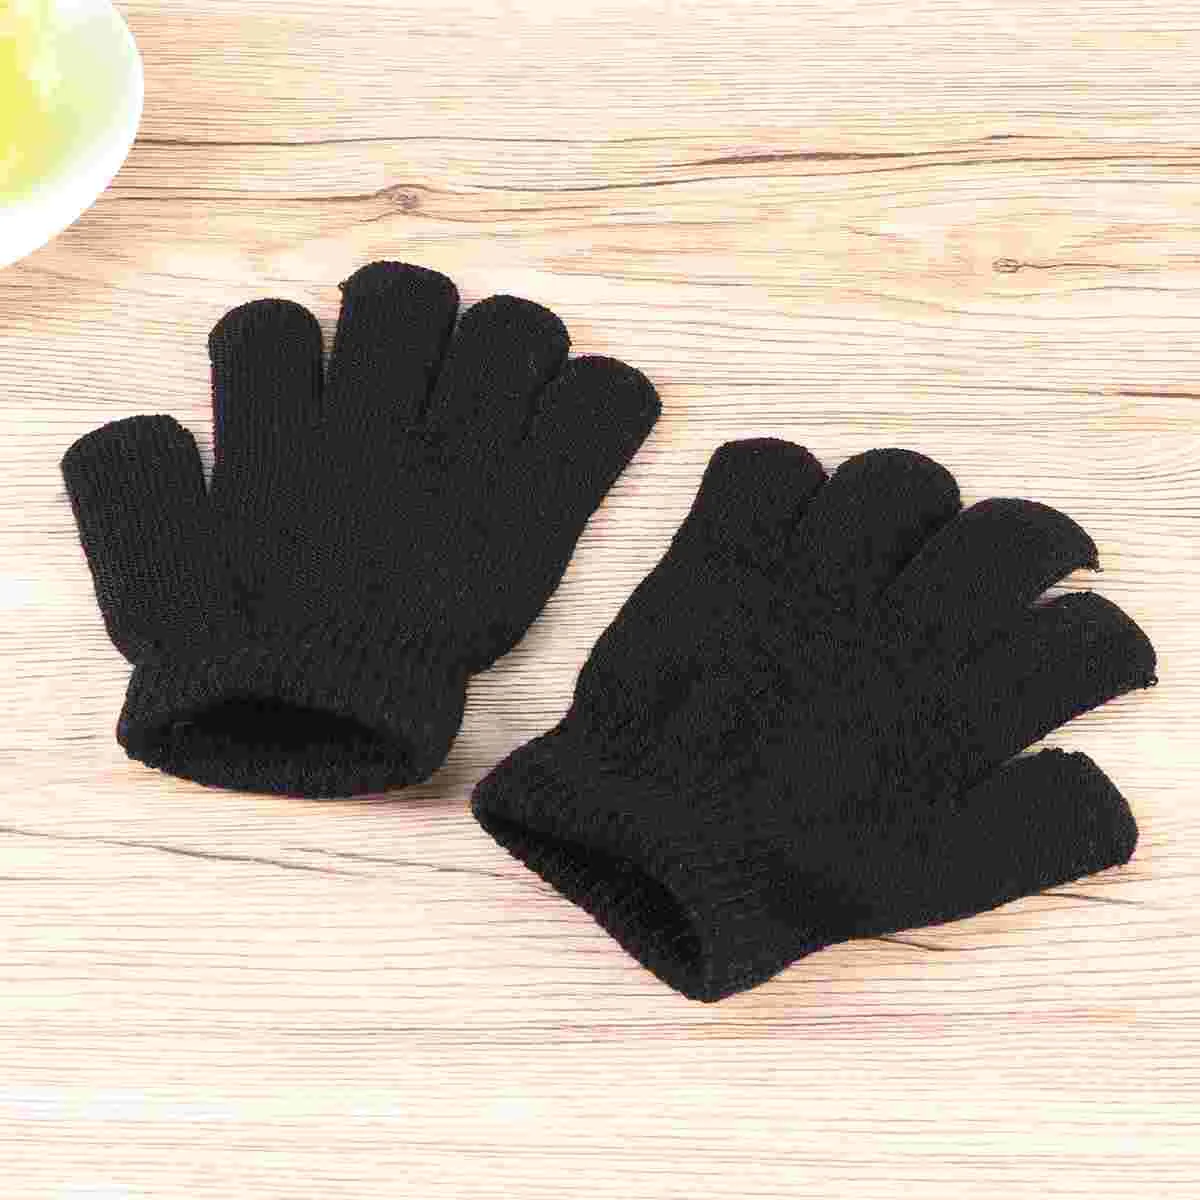 

12Pair New Fashion Kids Thick Knitted Gloves Warm Winter Gloves Children Stretch Mittens Boy Girl Hand Accessories(Black)